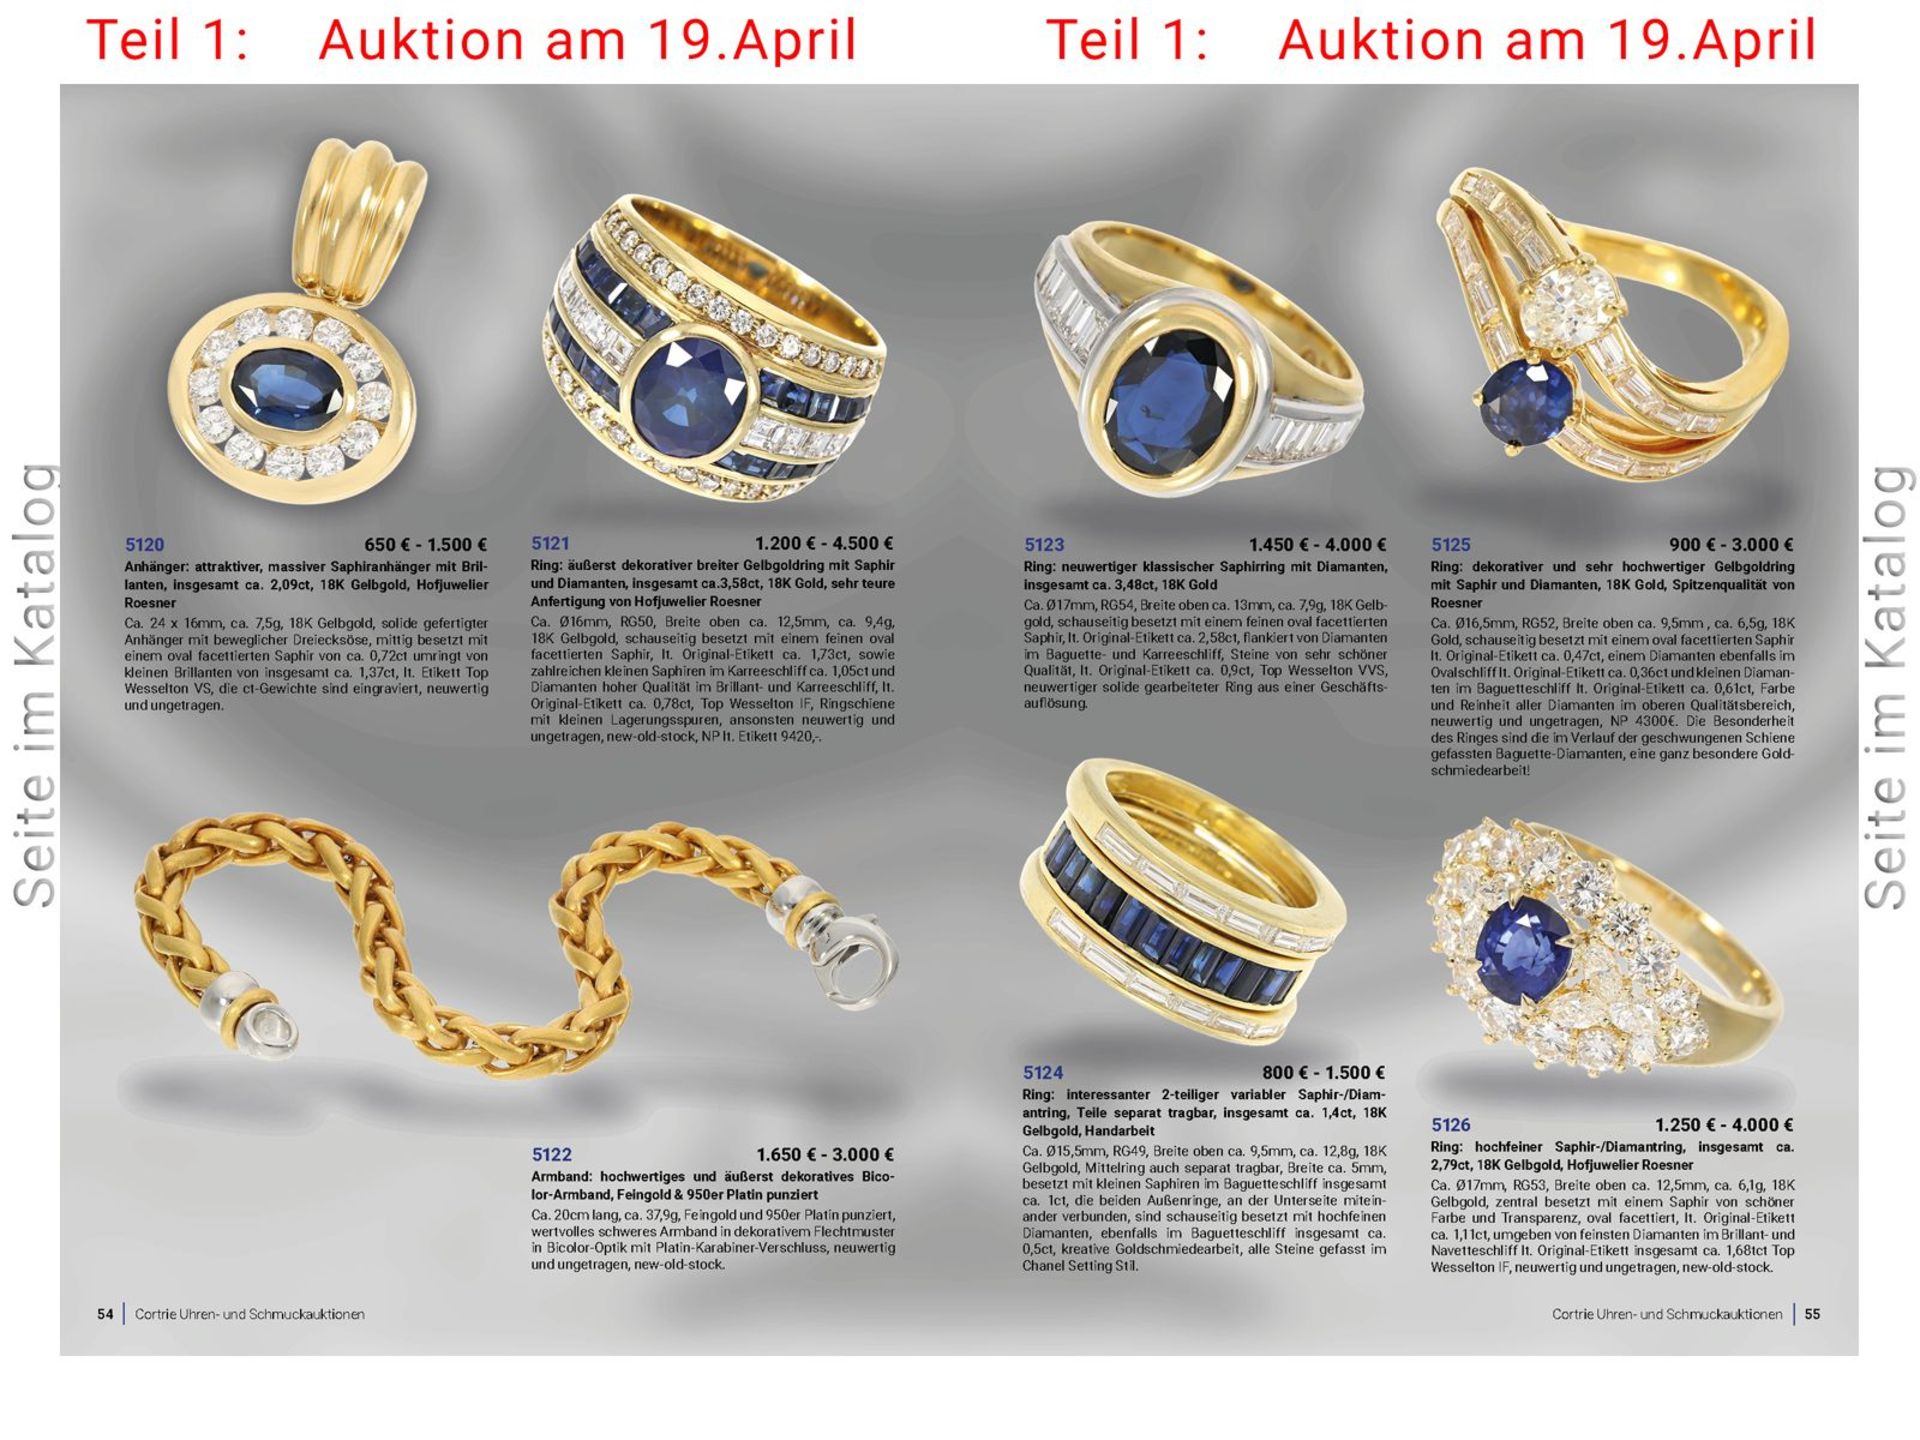 Armband: hochwertiges und äußerst dekoratives Bicolor-Armband, Feingold & 950er Platin punziertCa. - Bild 4 aus 4